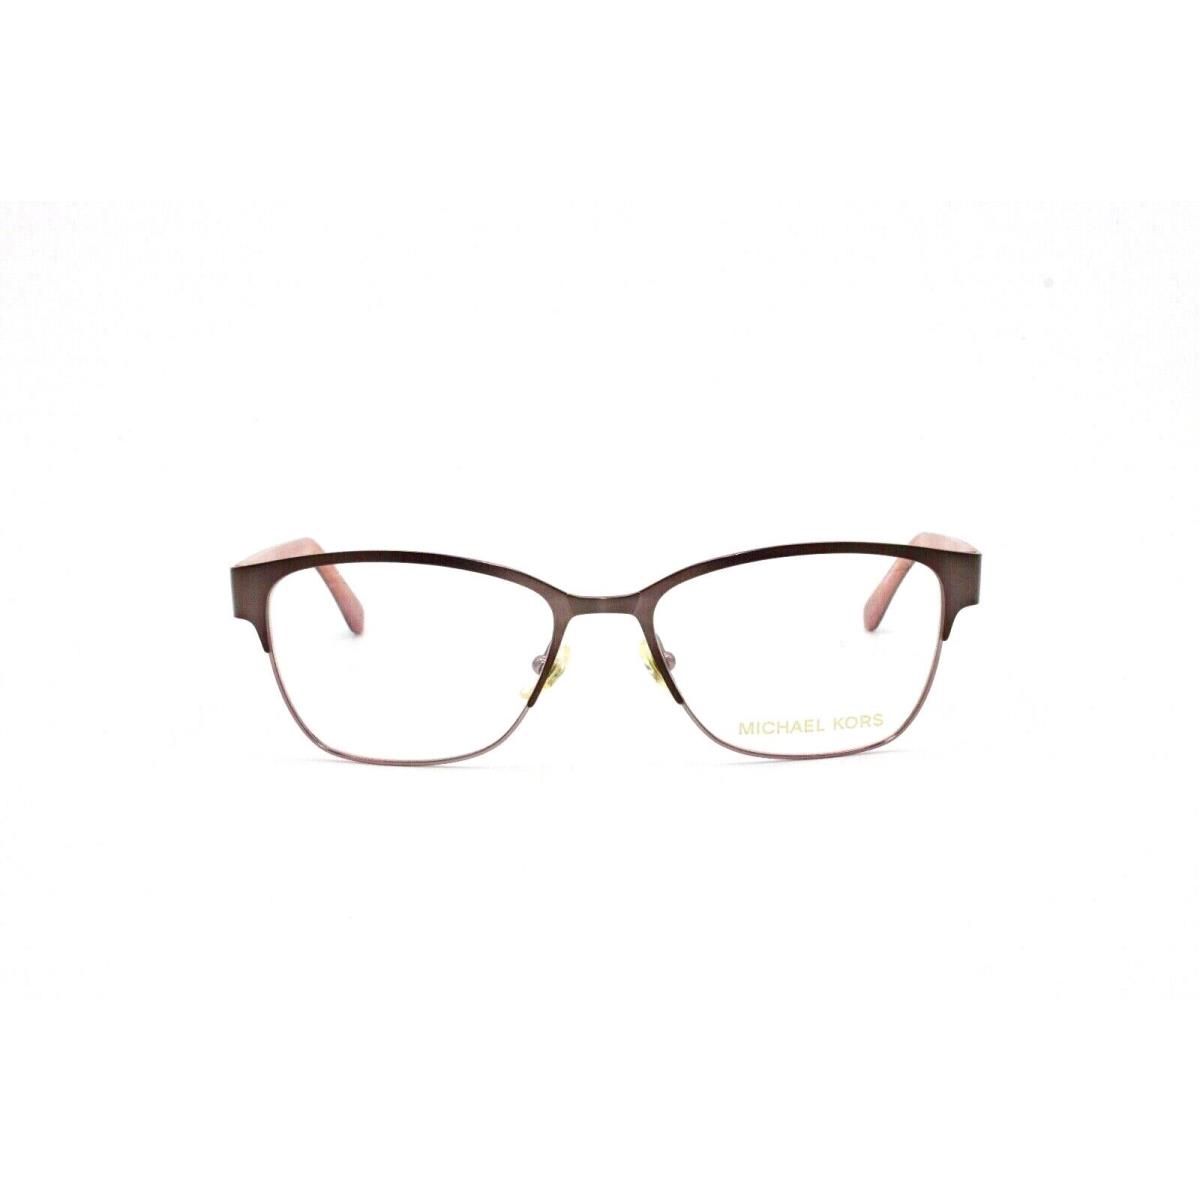 Michael Kors Eyewear Frame MK348 060 52 16 135